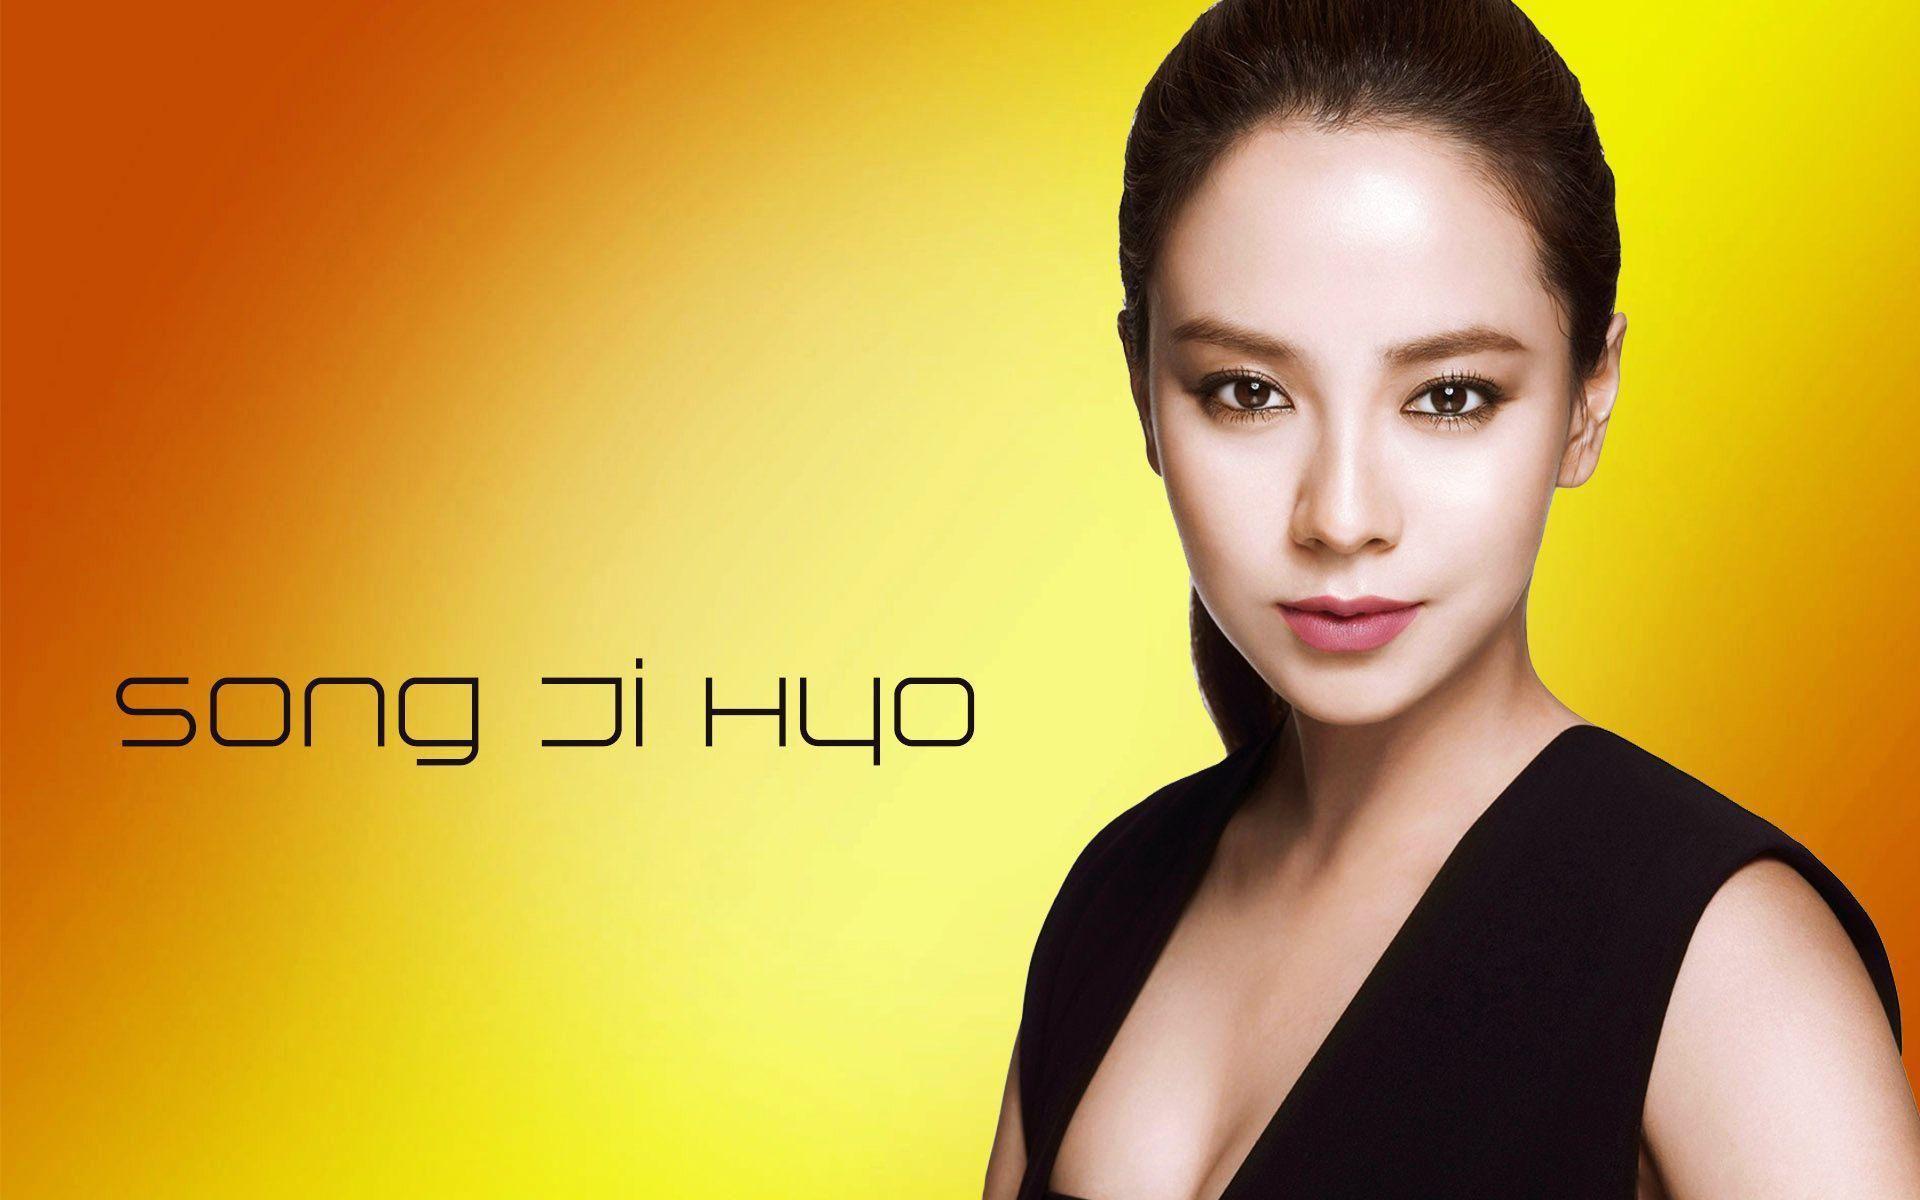 Song Ji Hyo Close Up Face HD Desktop Wallpaper, Widescreen, High